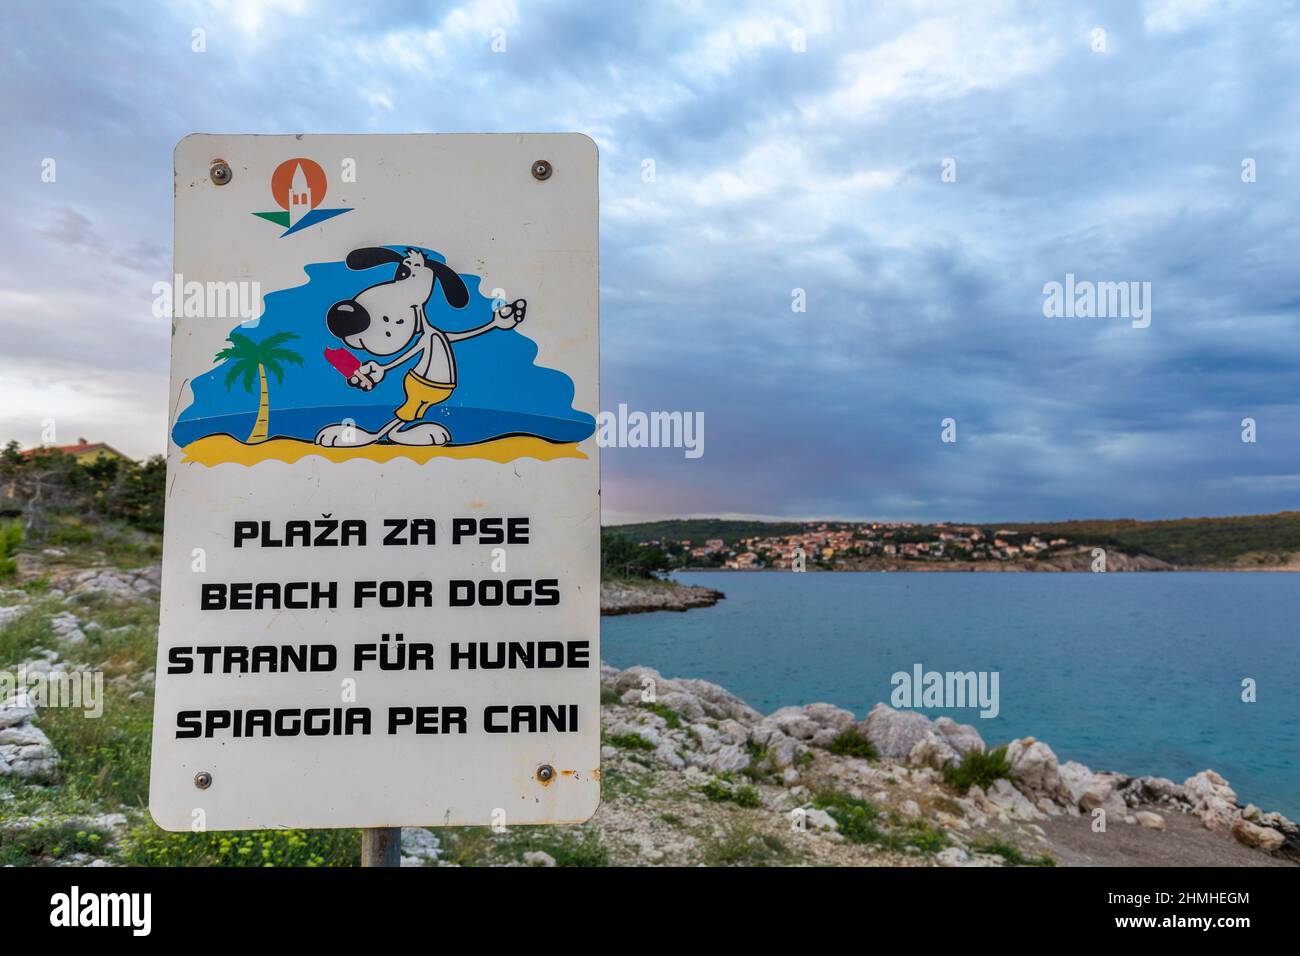 croatia, Kvarner bay, Island of Krk, Dobrinj municipality in the Primorje-Gorski Kotar County, Å ilo beach, dogs allowed beach signpost Stock Photo